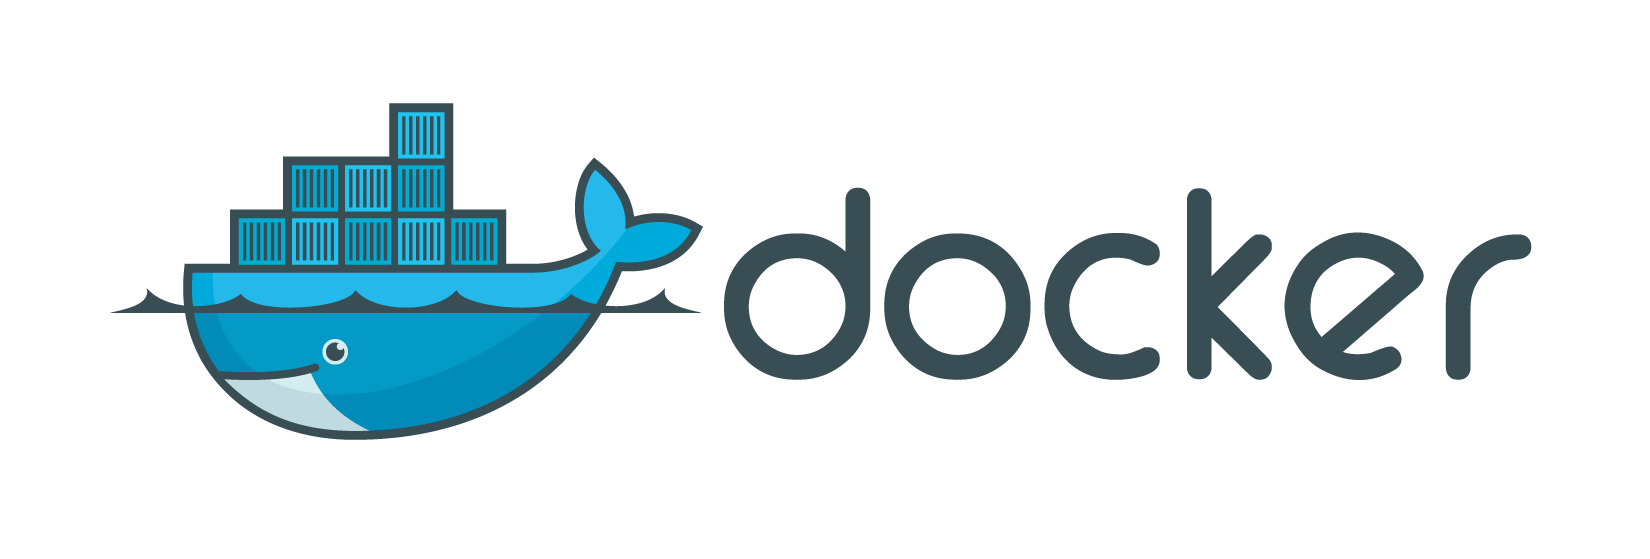 Logo de Docker